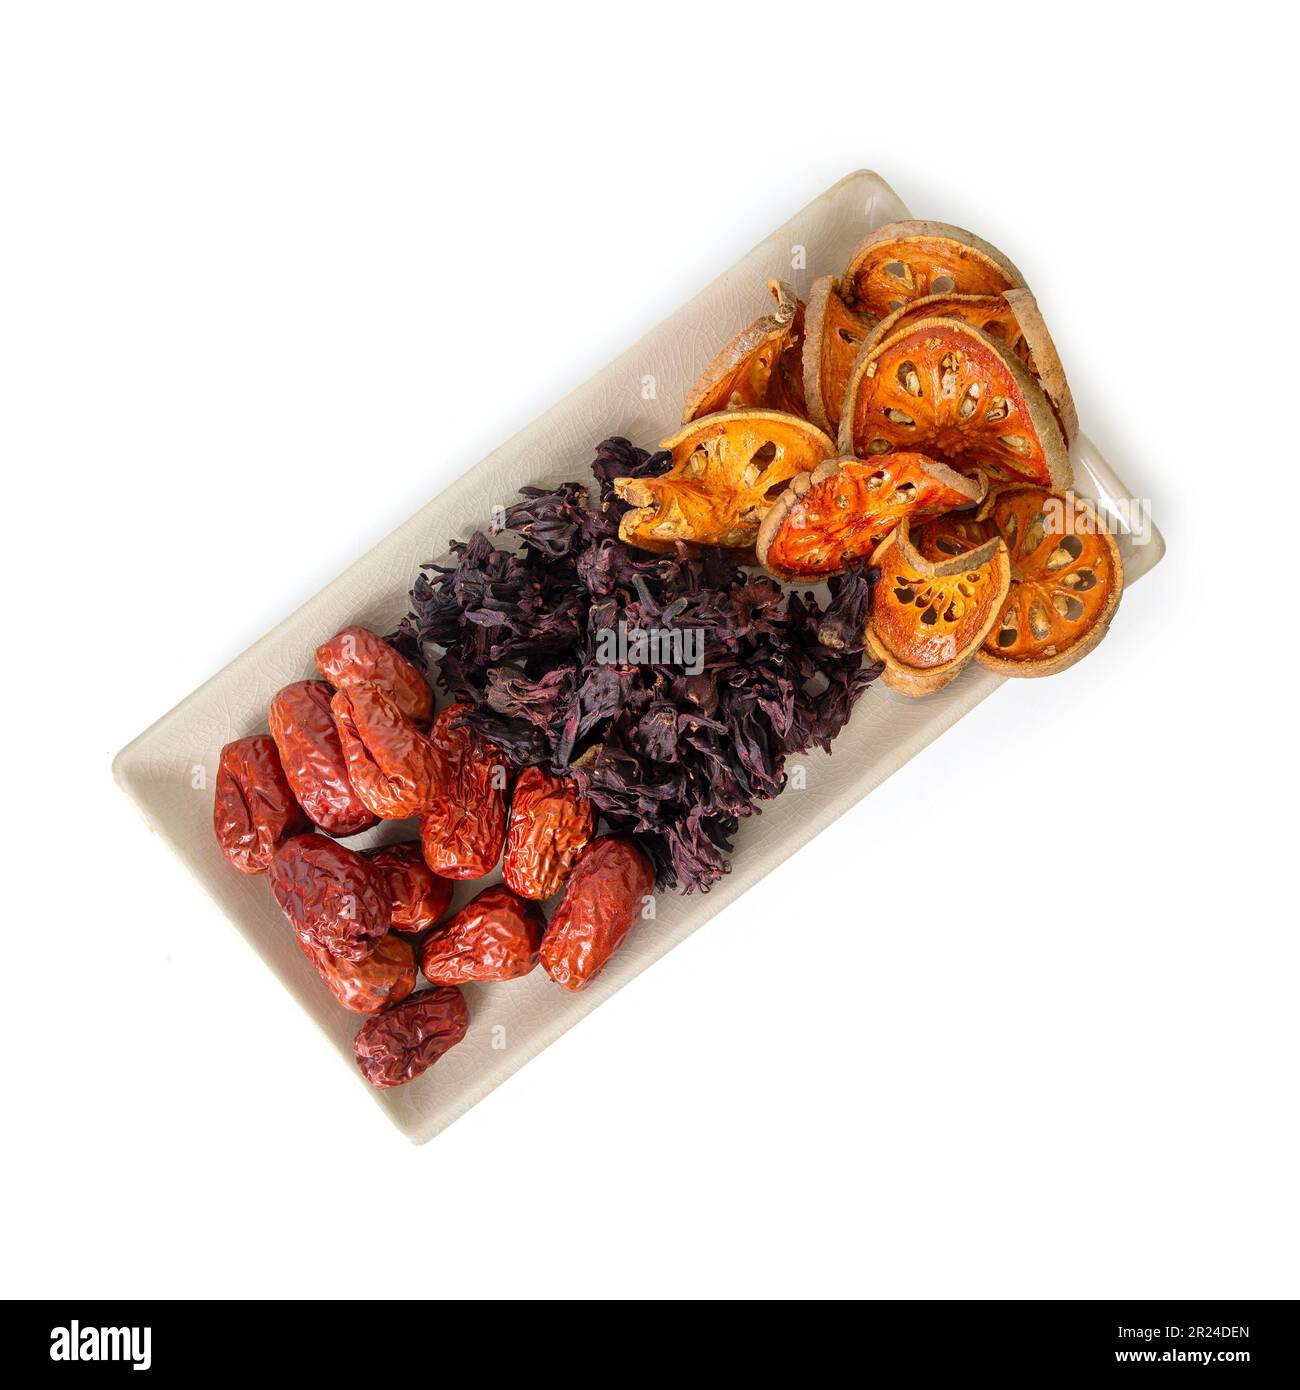 Draufsicht von drei Arten von asiatischen getrockneten Früchten, Bael, Okra und Jujube sind Zutaten von gesundem Kräutertee auf demselben Teller auf weißem Hintergrund. Stockfoto